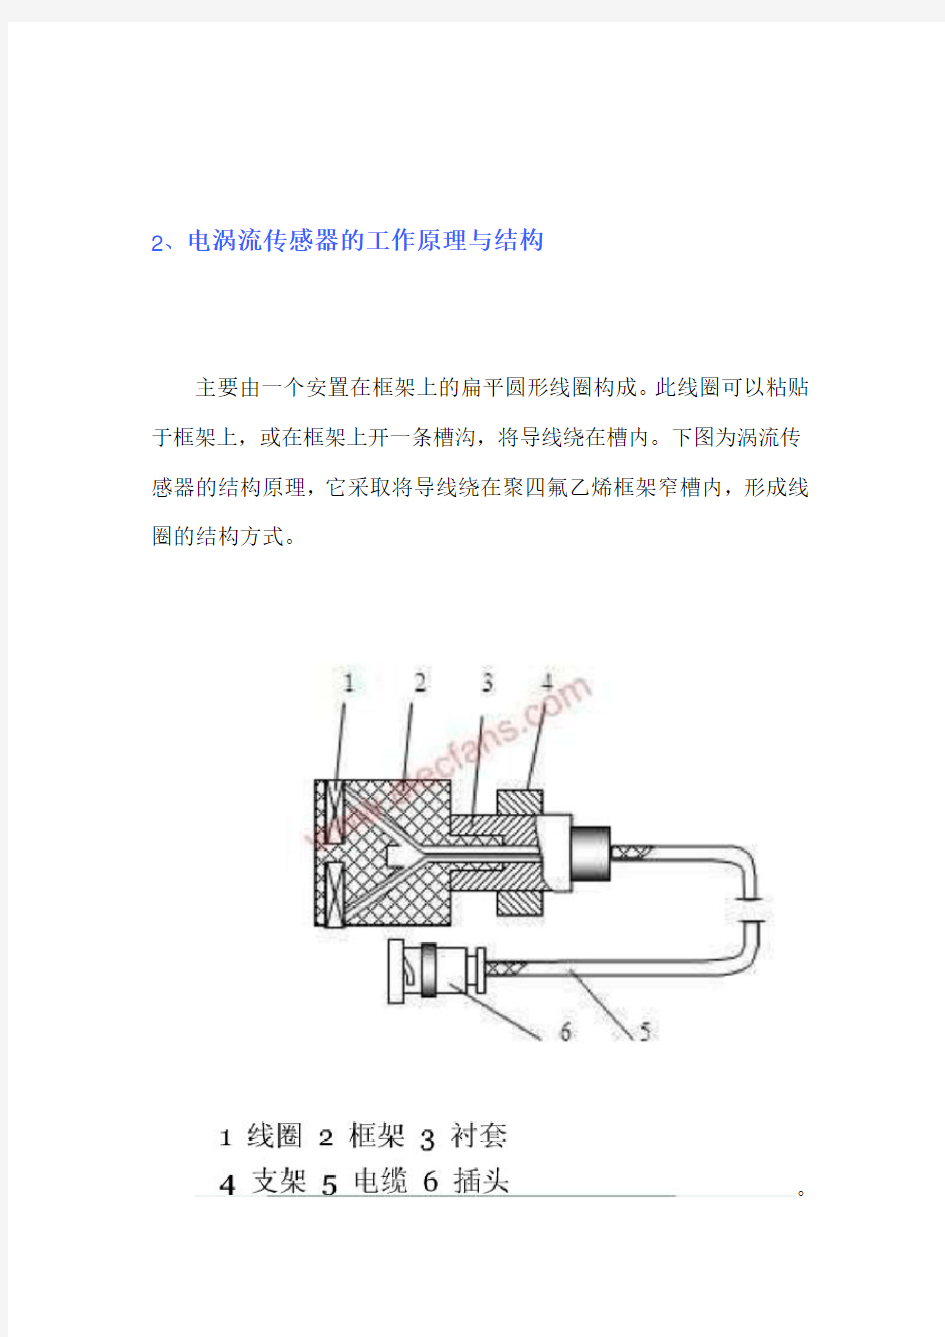 电涡流传感器基本原理以及转速测量的完整实例演示含原理图